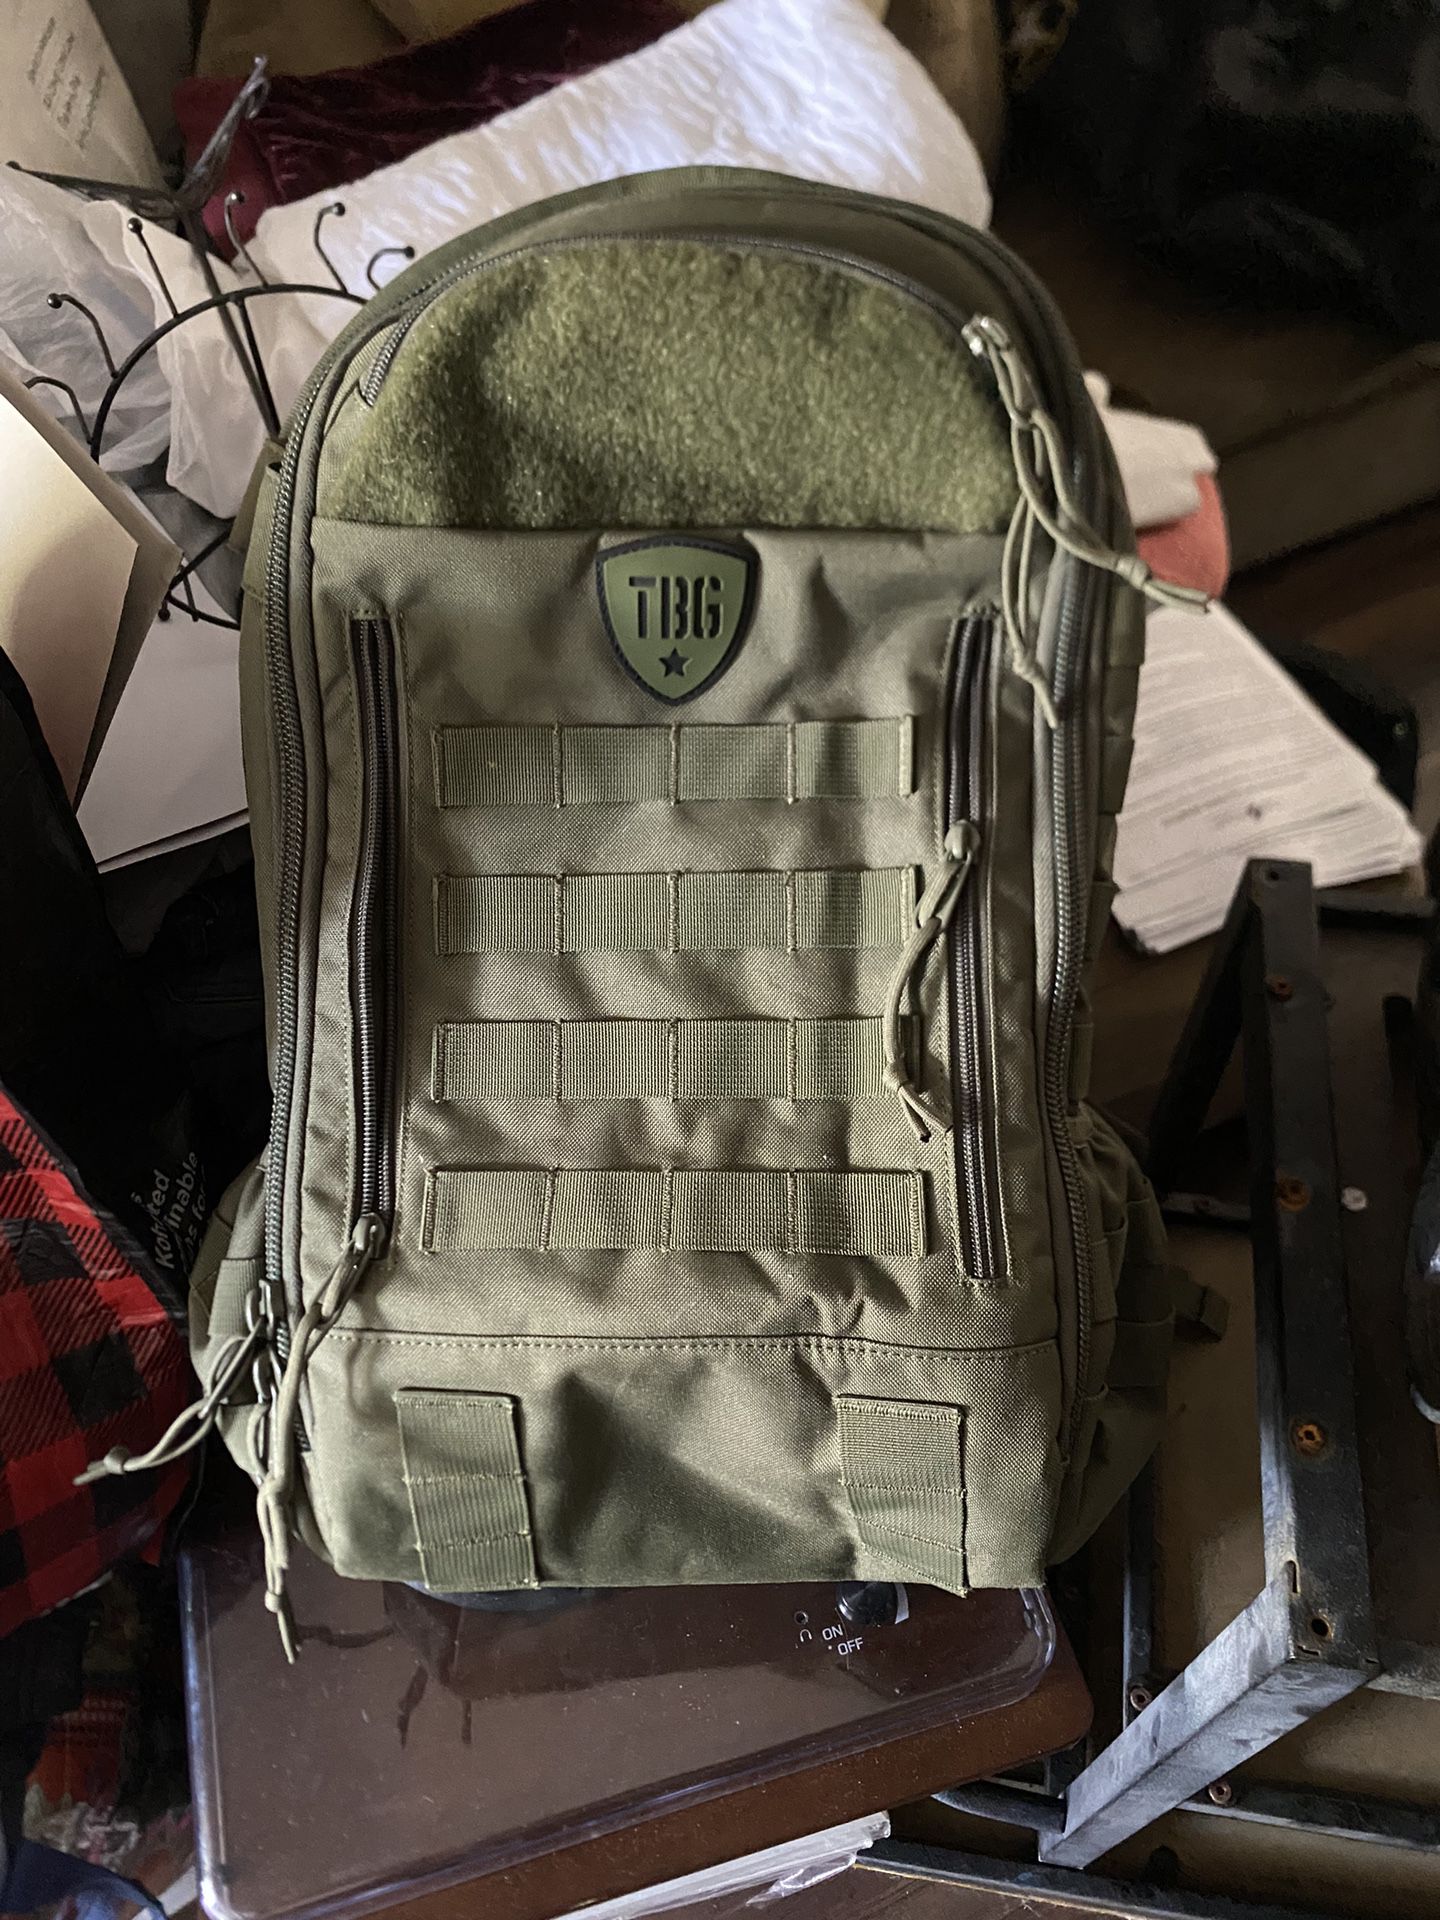 Tbg Backpack 